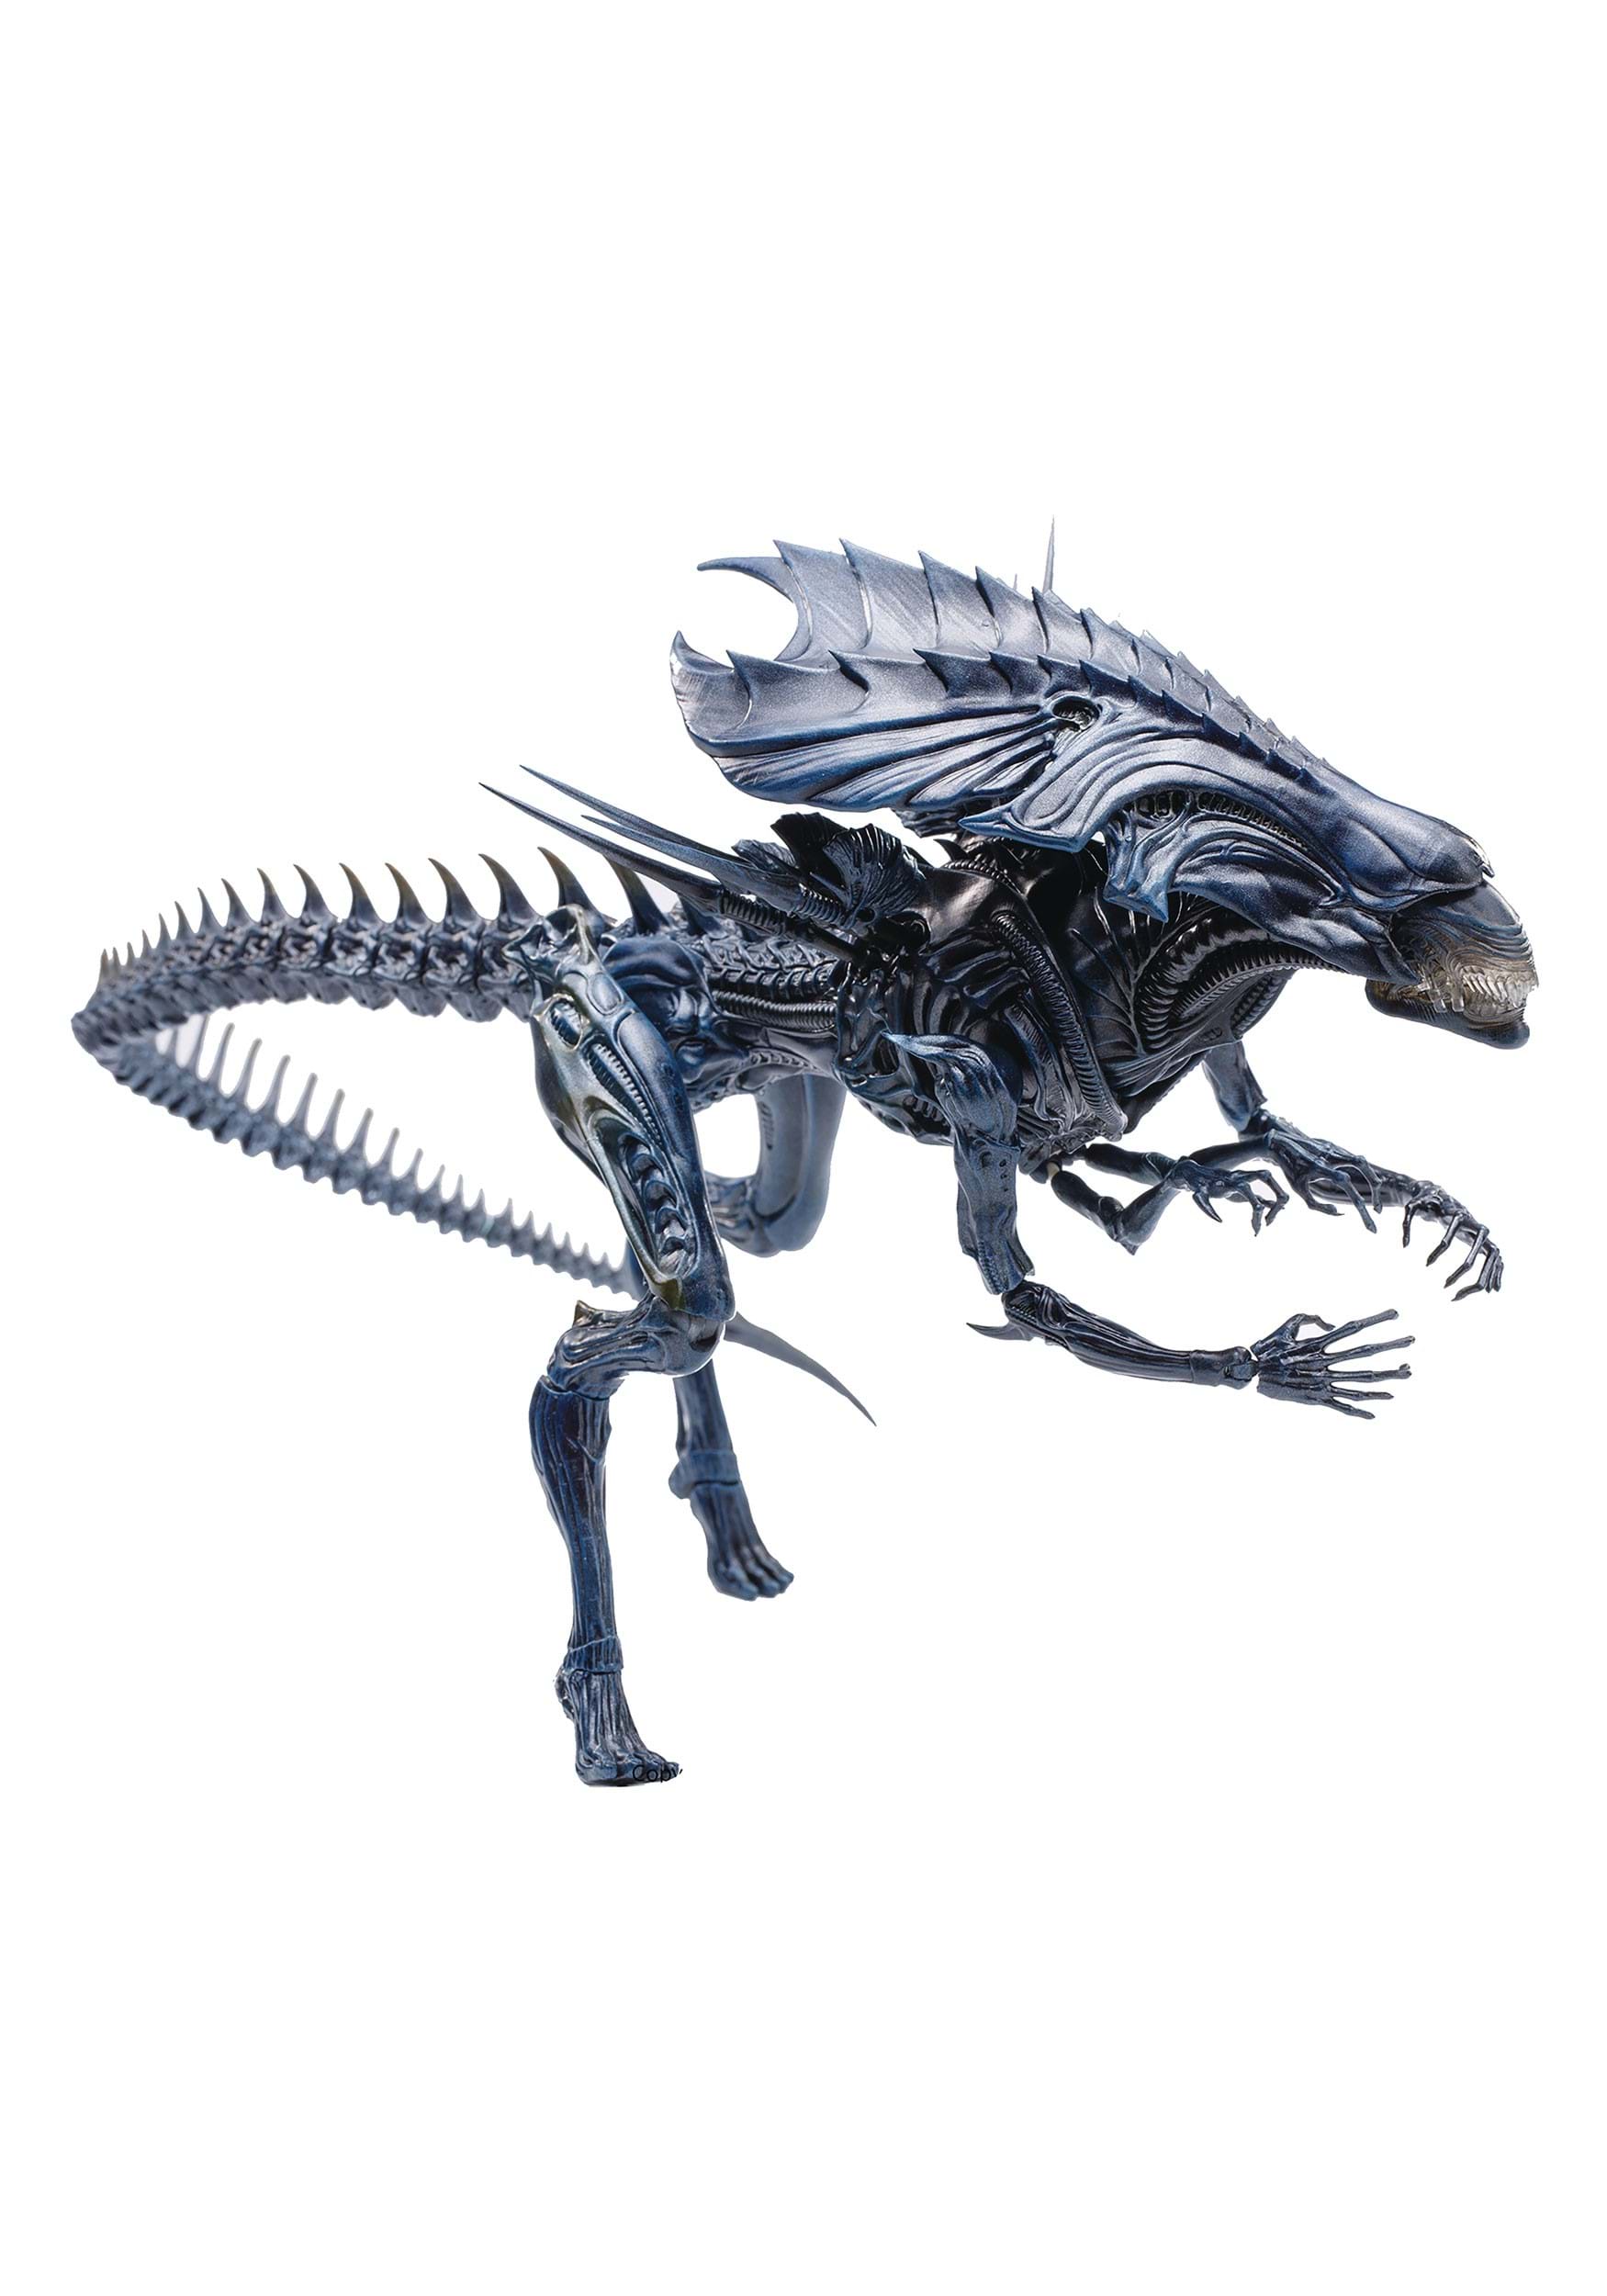 Aliens vs Predator Alien Queen 1:18 Scale Action Figure